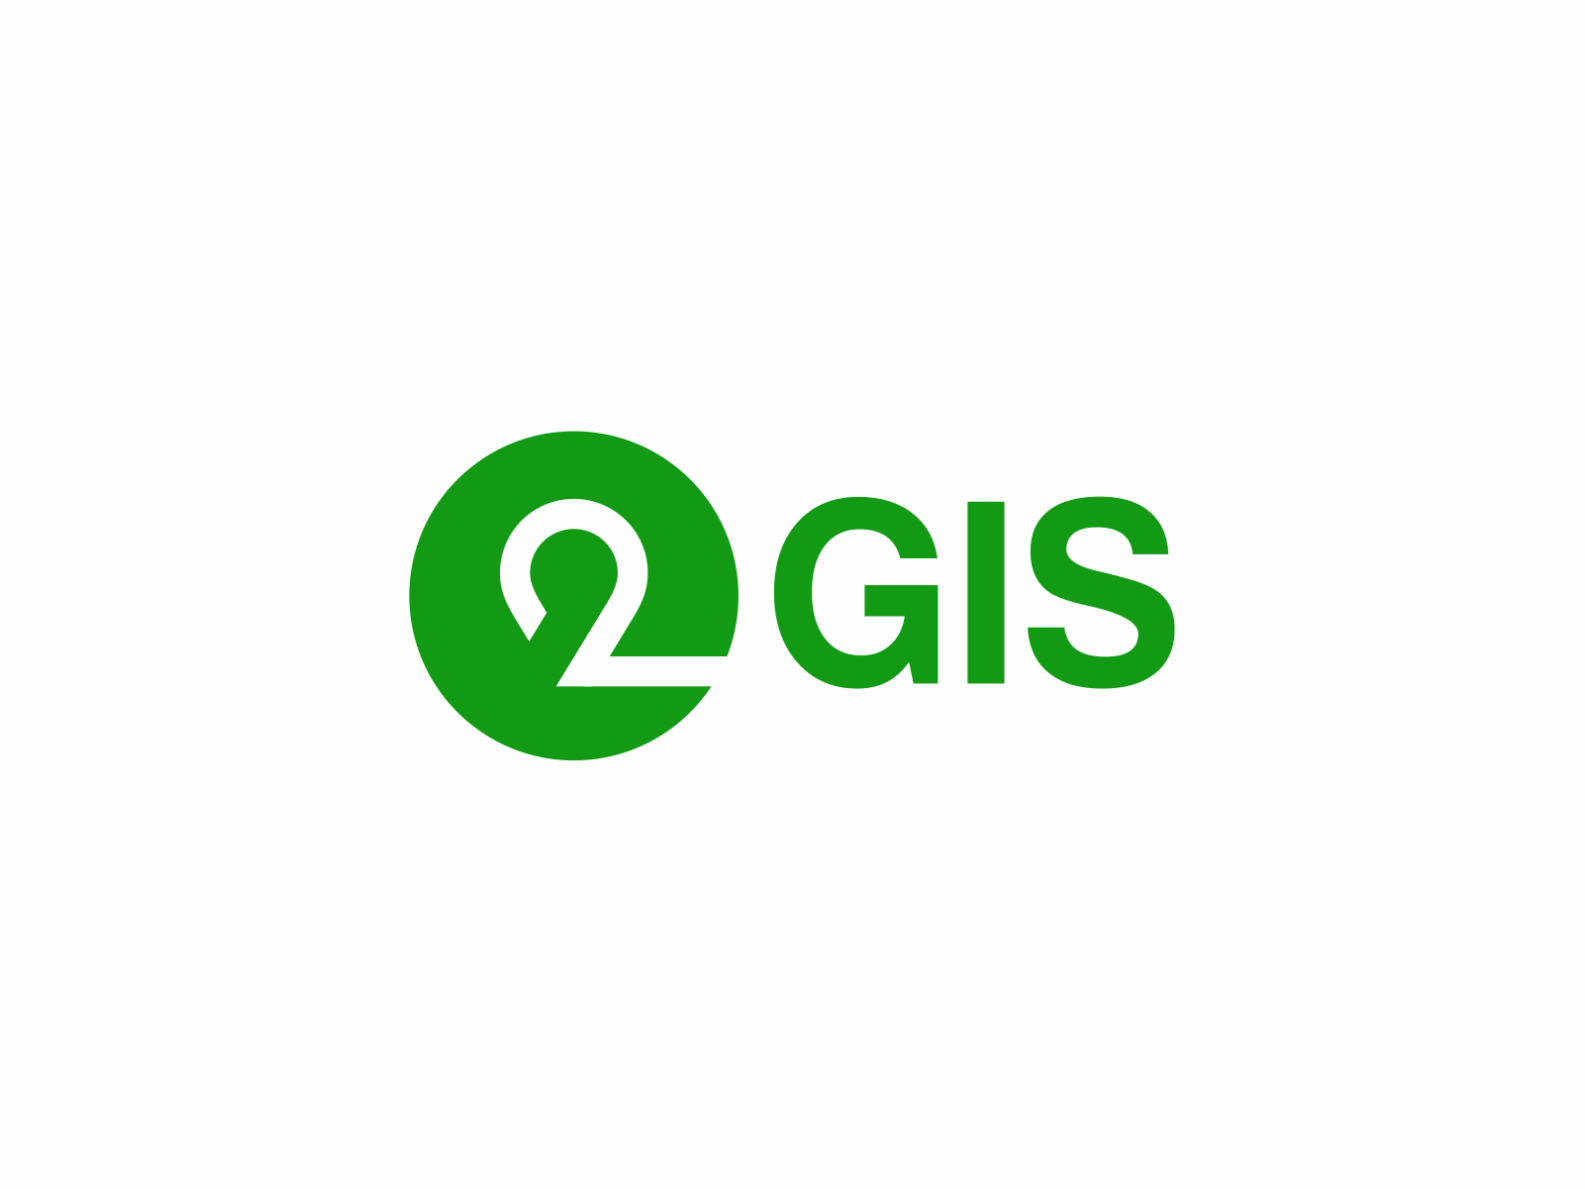 Картинка 2 гис. 2gis логотип. Лого 2 ГИС У приложения. 2гис лого PNG. Лого 2 ГИС старый.